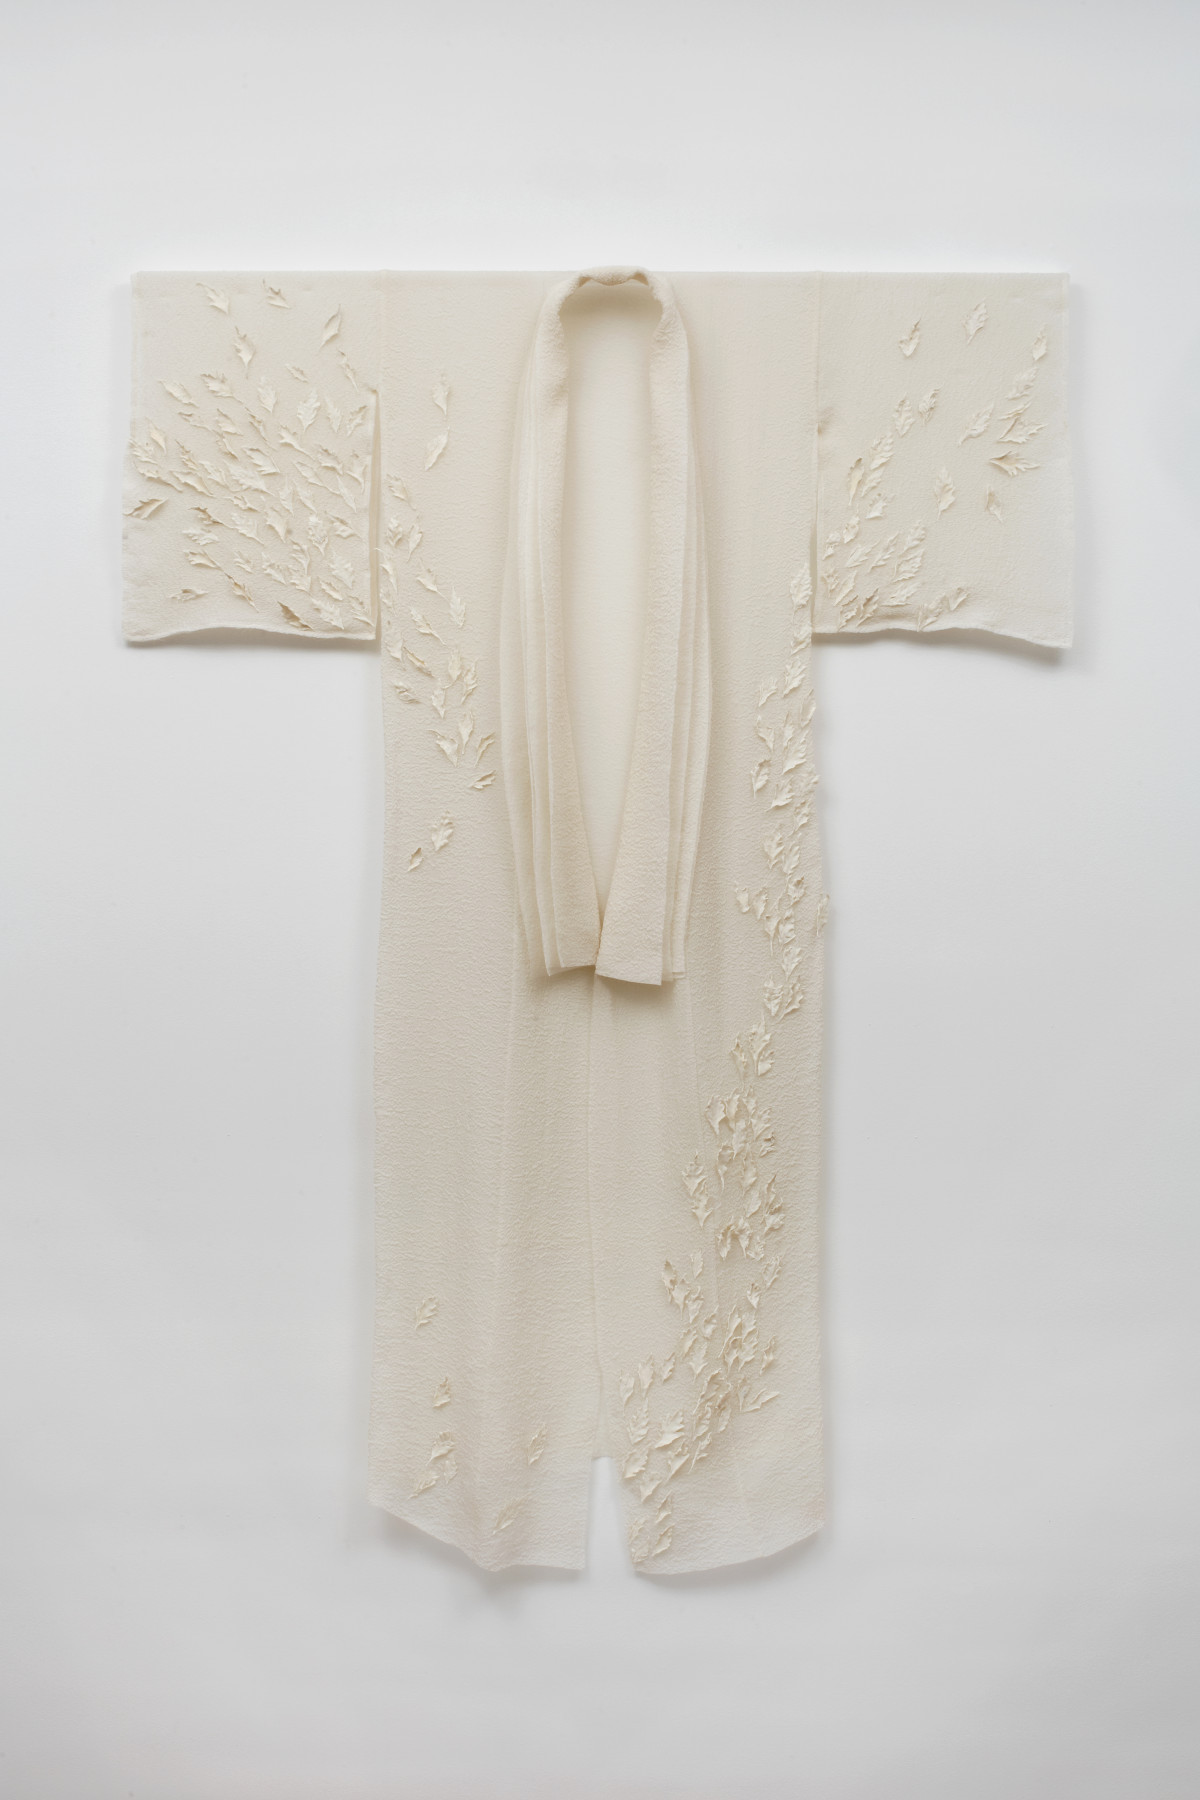 Véronique Arnold, ‘Le bruissement des feuilles / le miroitement de l'eau’, 2017, Limoges white porcelain leaves on flocked silk georgette kimono 